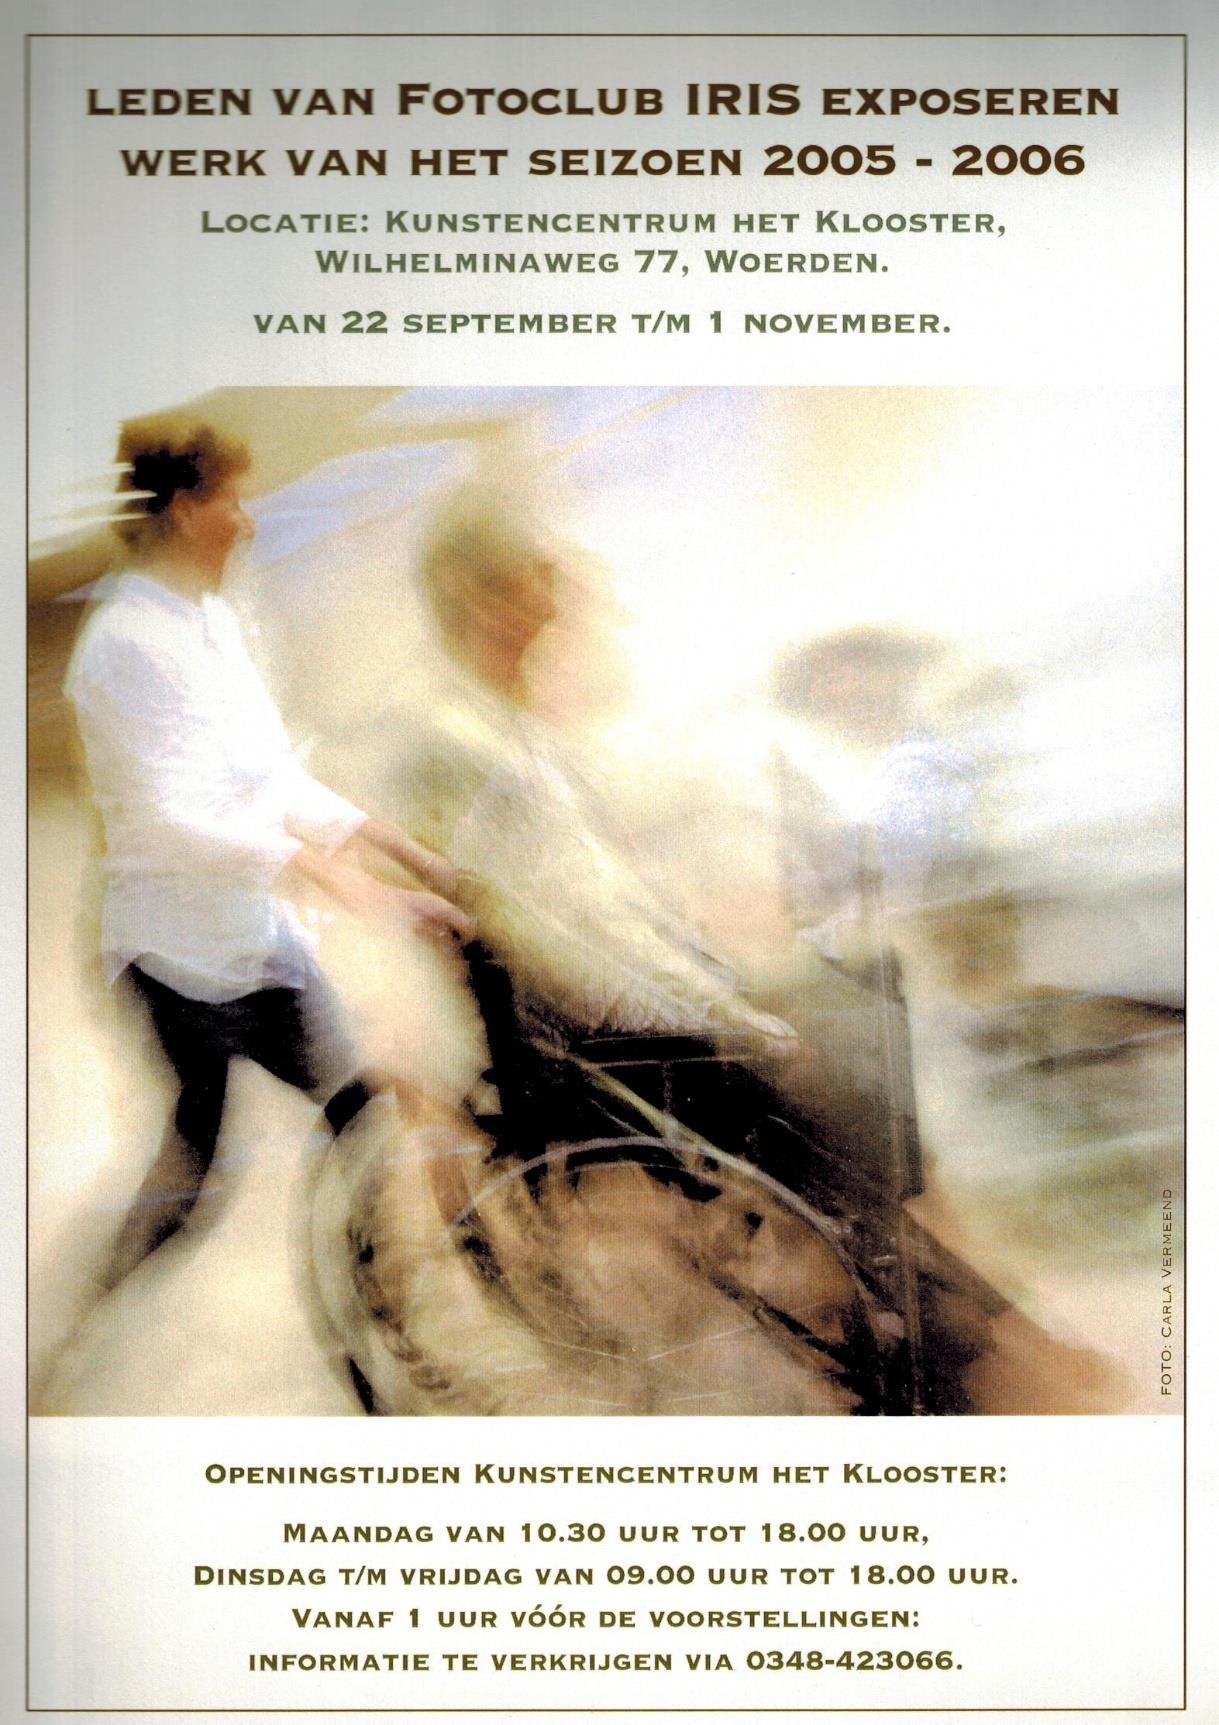 Met haar foto swingende wielen wint Carla Vermeend in 2006 de Iristrofee. Anno Visser behaalde de 2 e plaats en Menno Cornelissen de derde prijs.